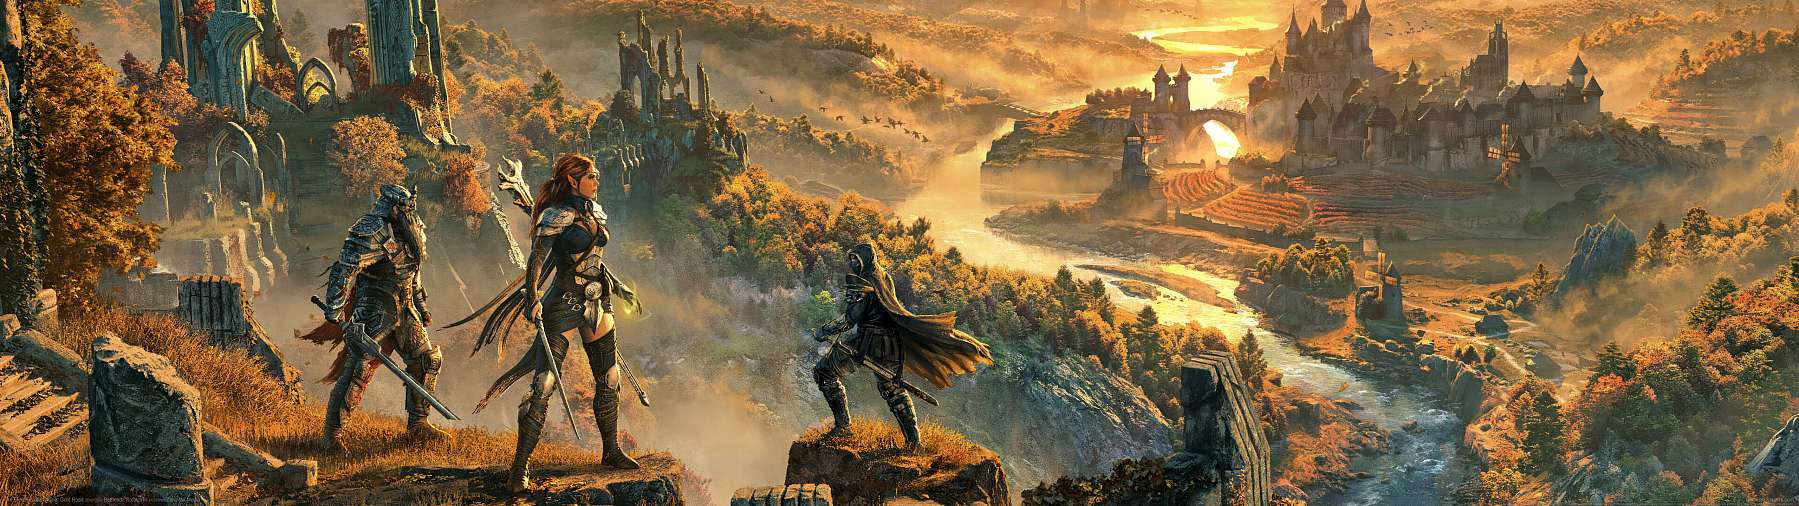 The Elder Scrolls Online: Gold Road wallpaper or background